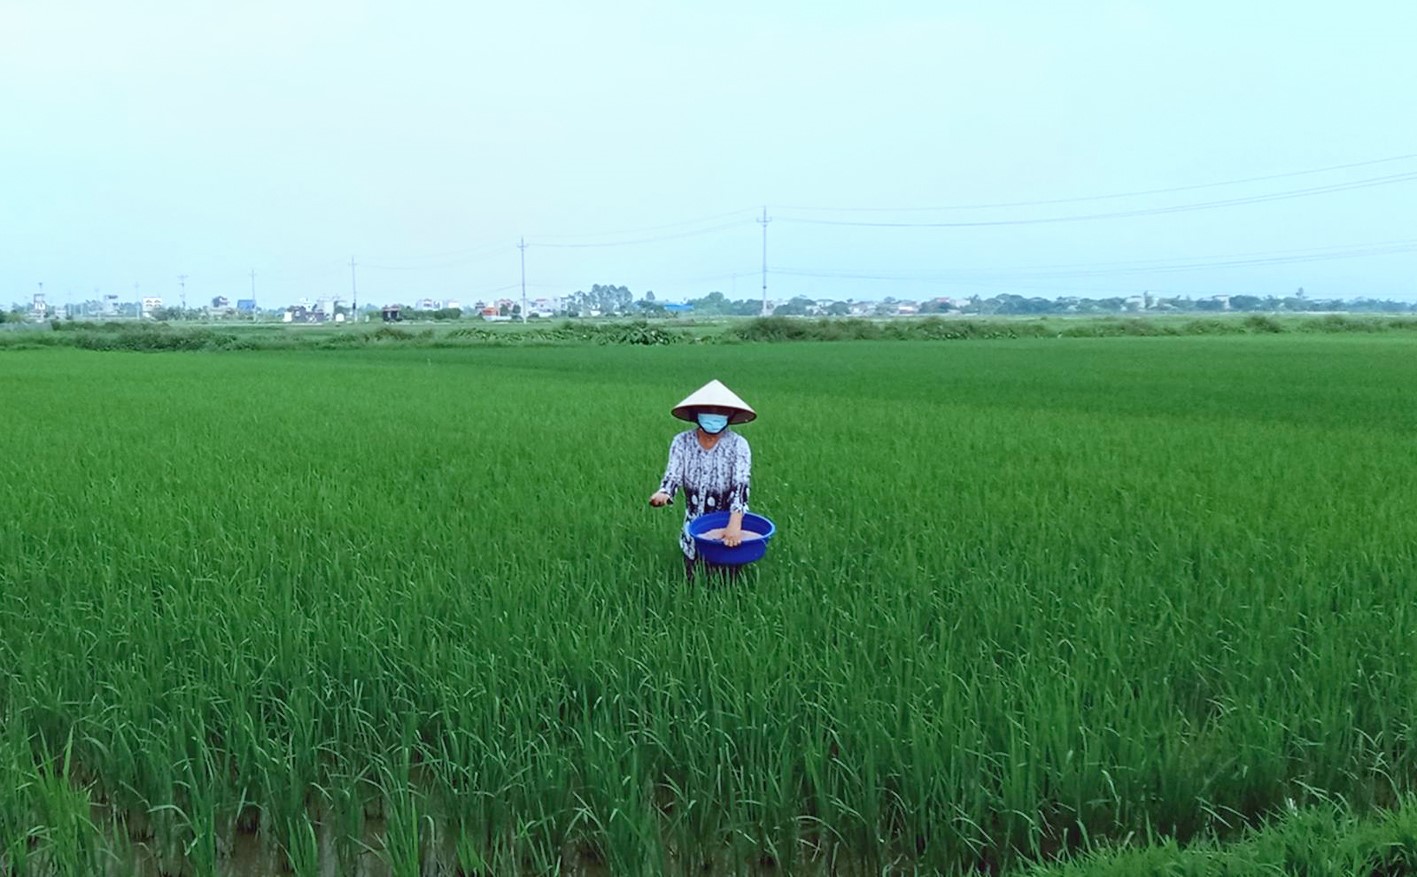 Nông dân Quỳnh Phụ chuyển trọng tâm sang chăm sóc, bảo vệ lúa mùa và cây màu hè thu.